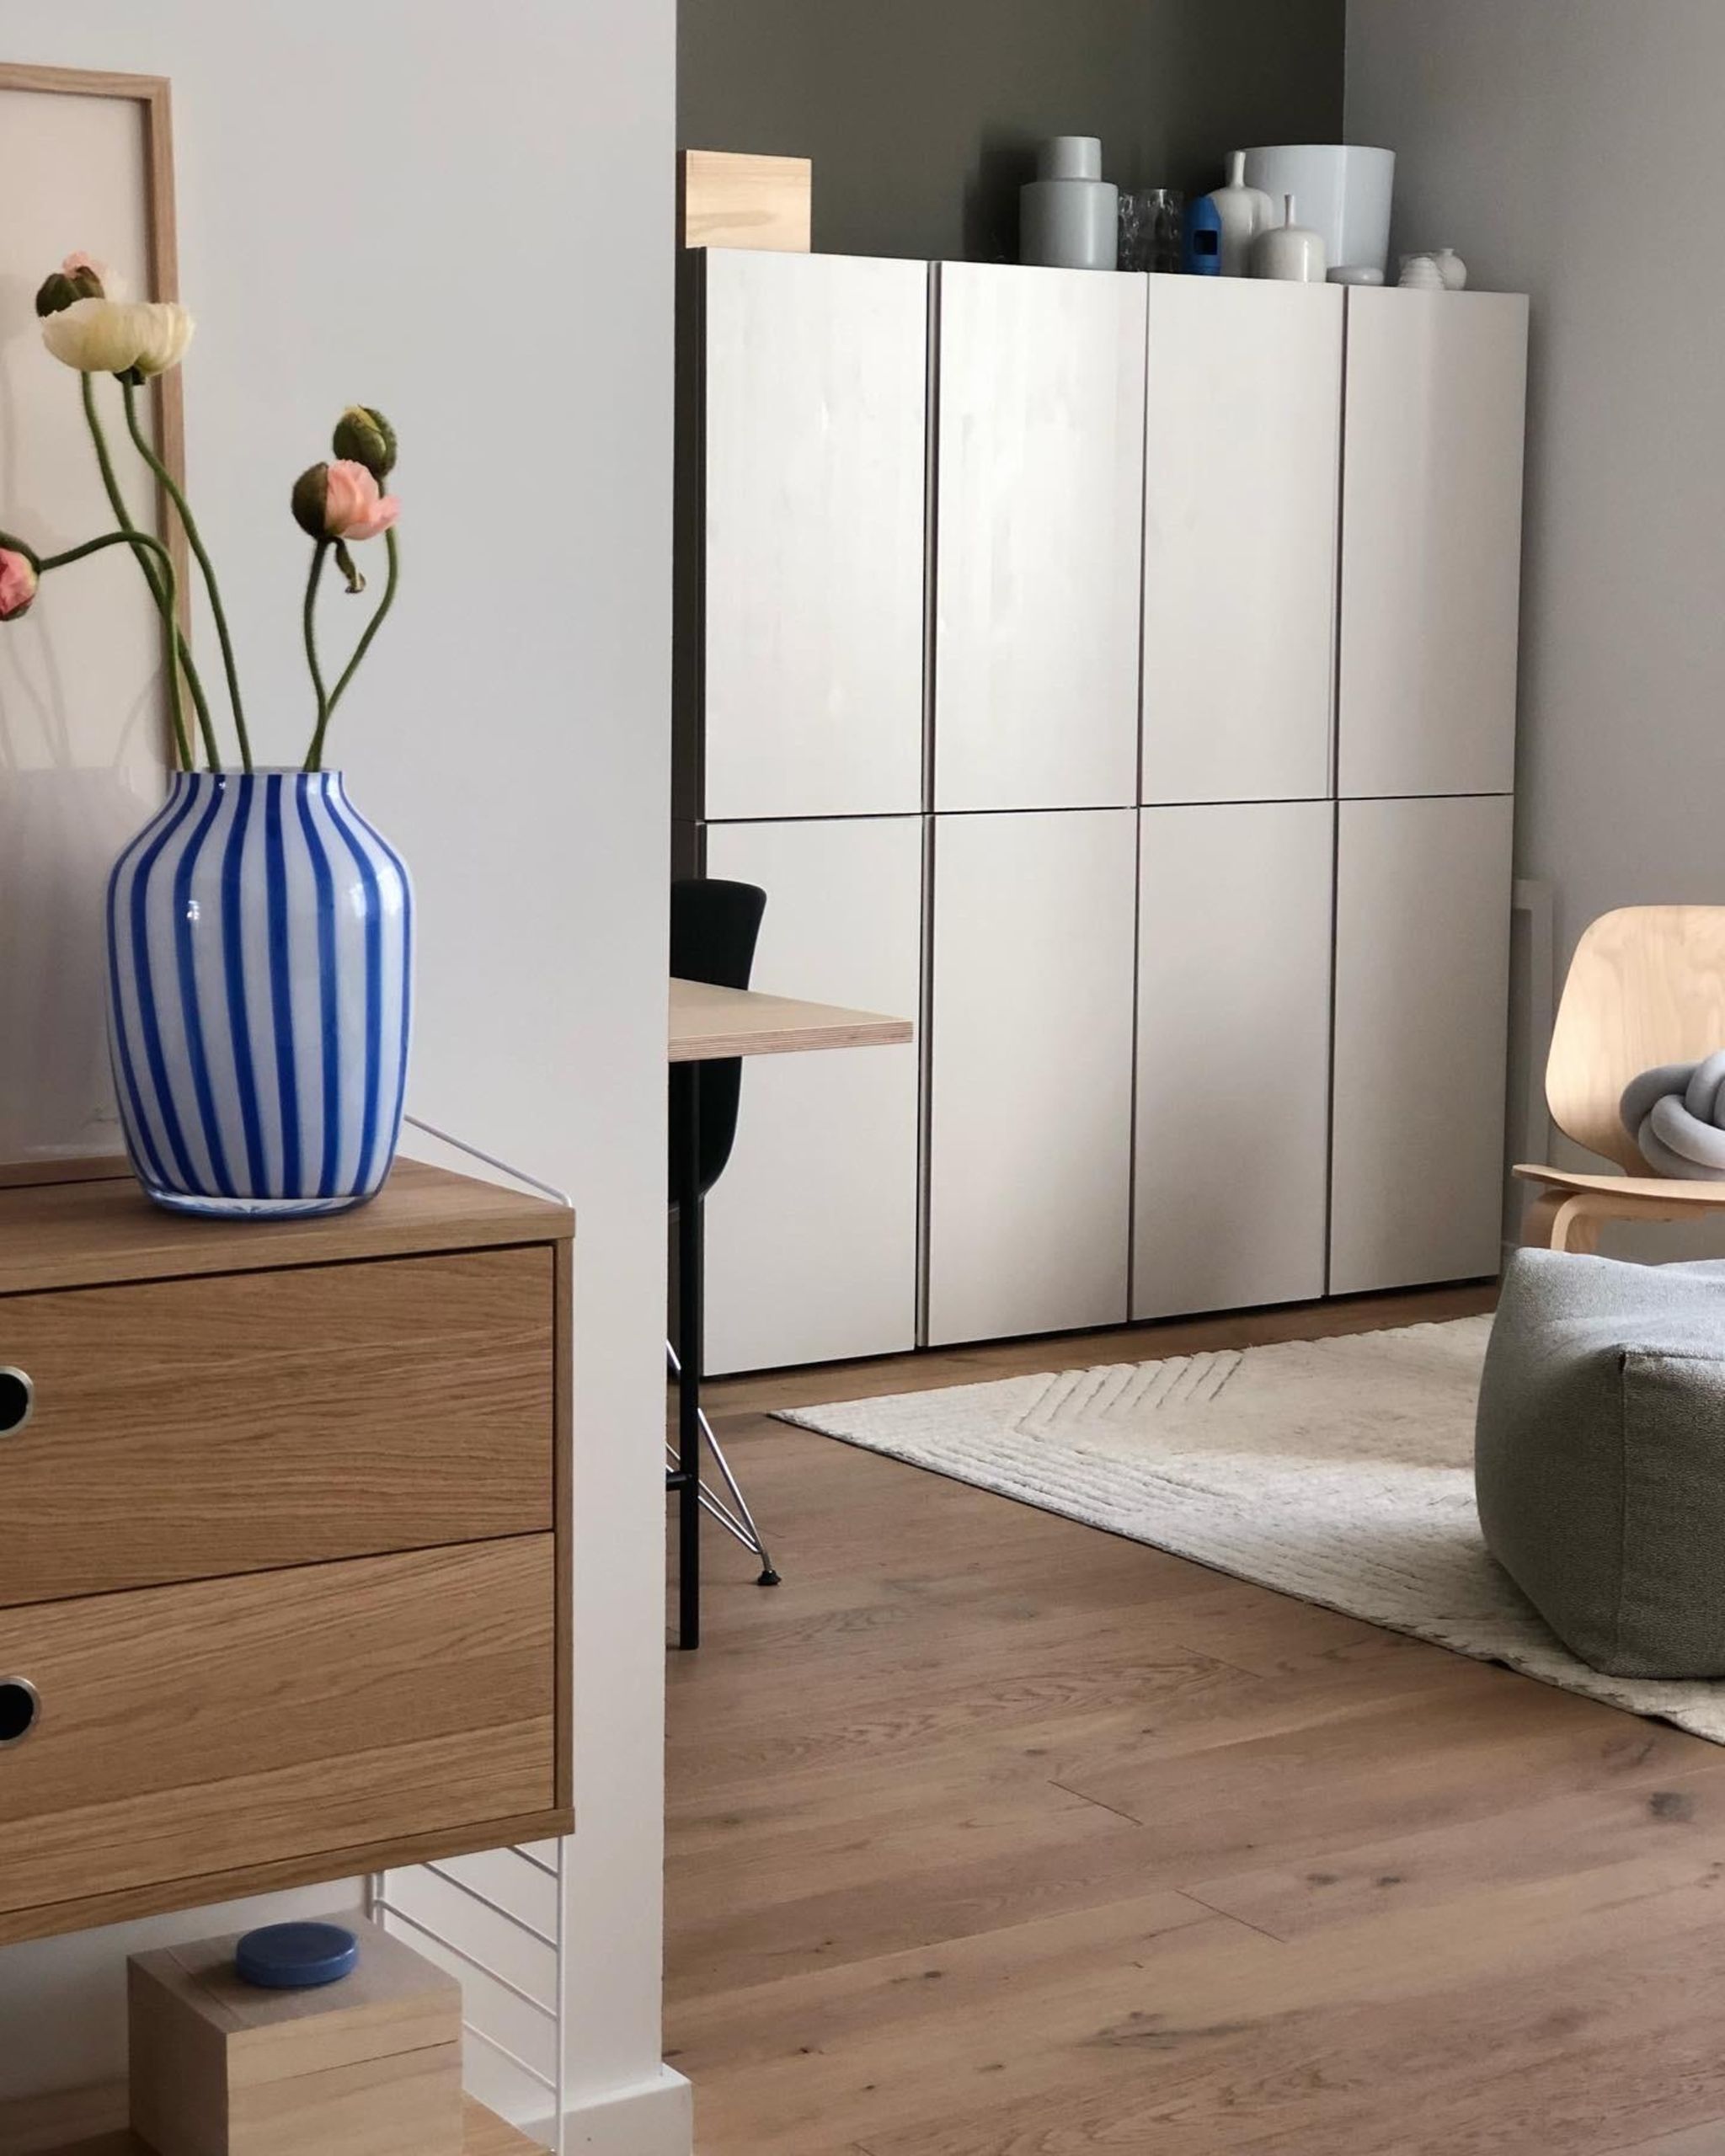 Ikea Hacks mit Ivar und Bestå – 20 kreative Ideen   [SCHÖNER WOHNEN]